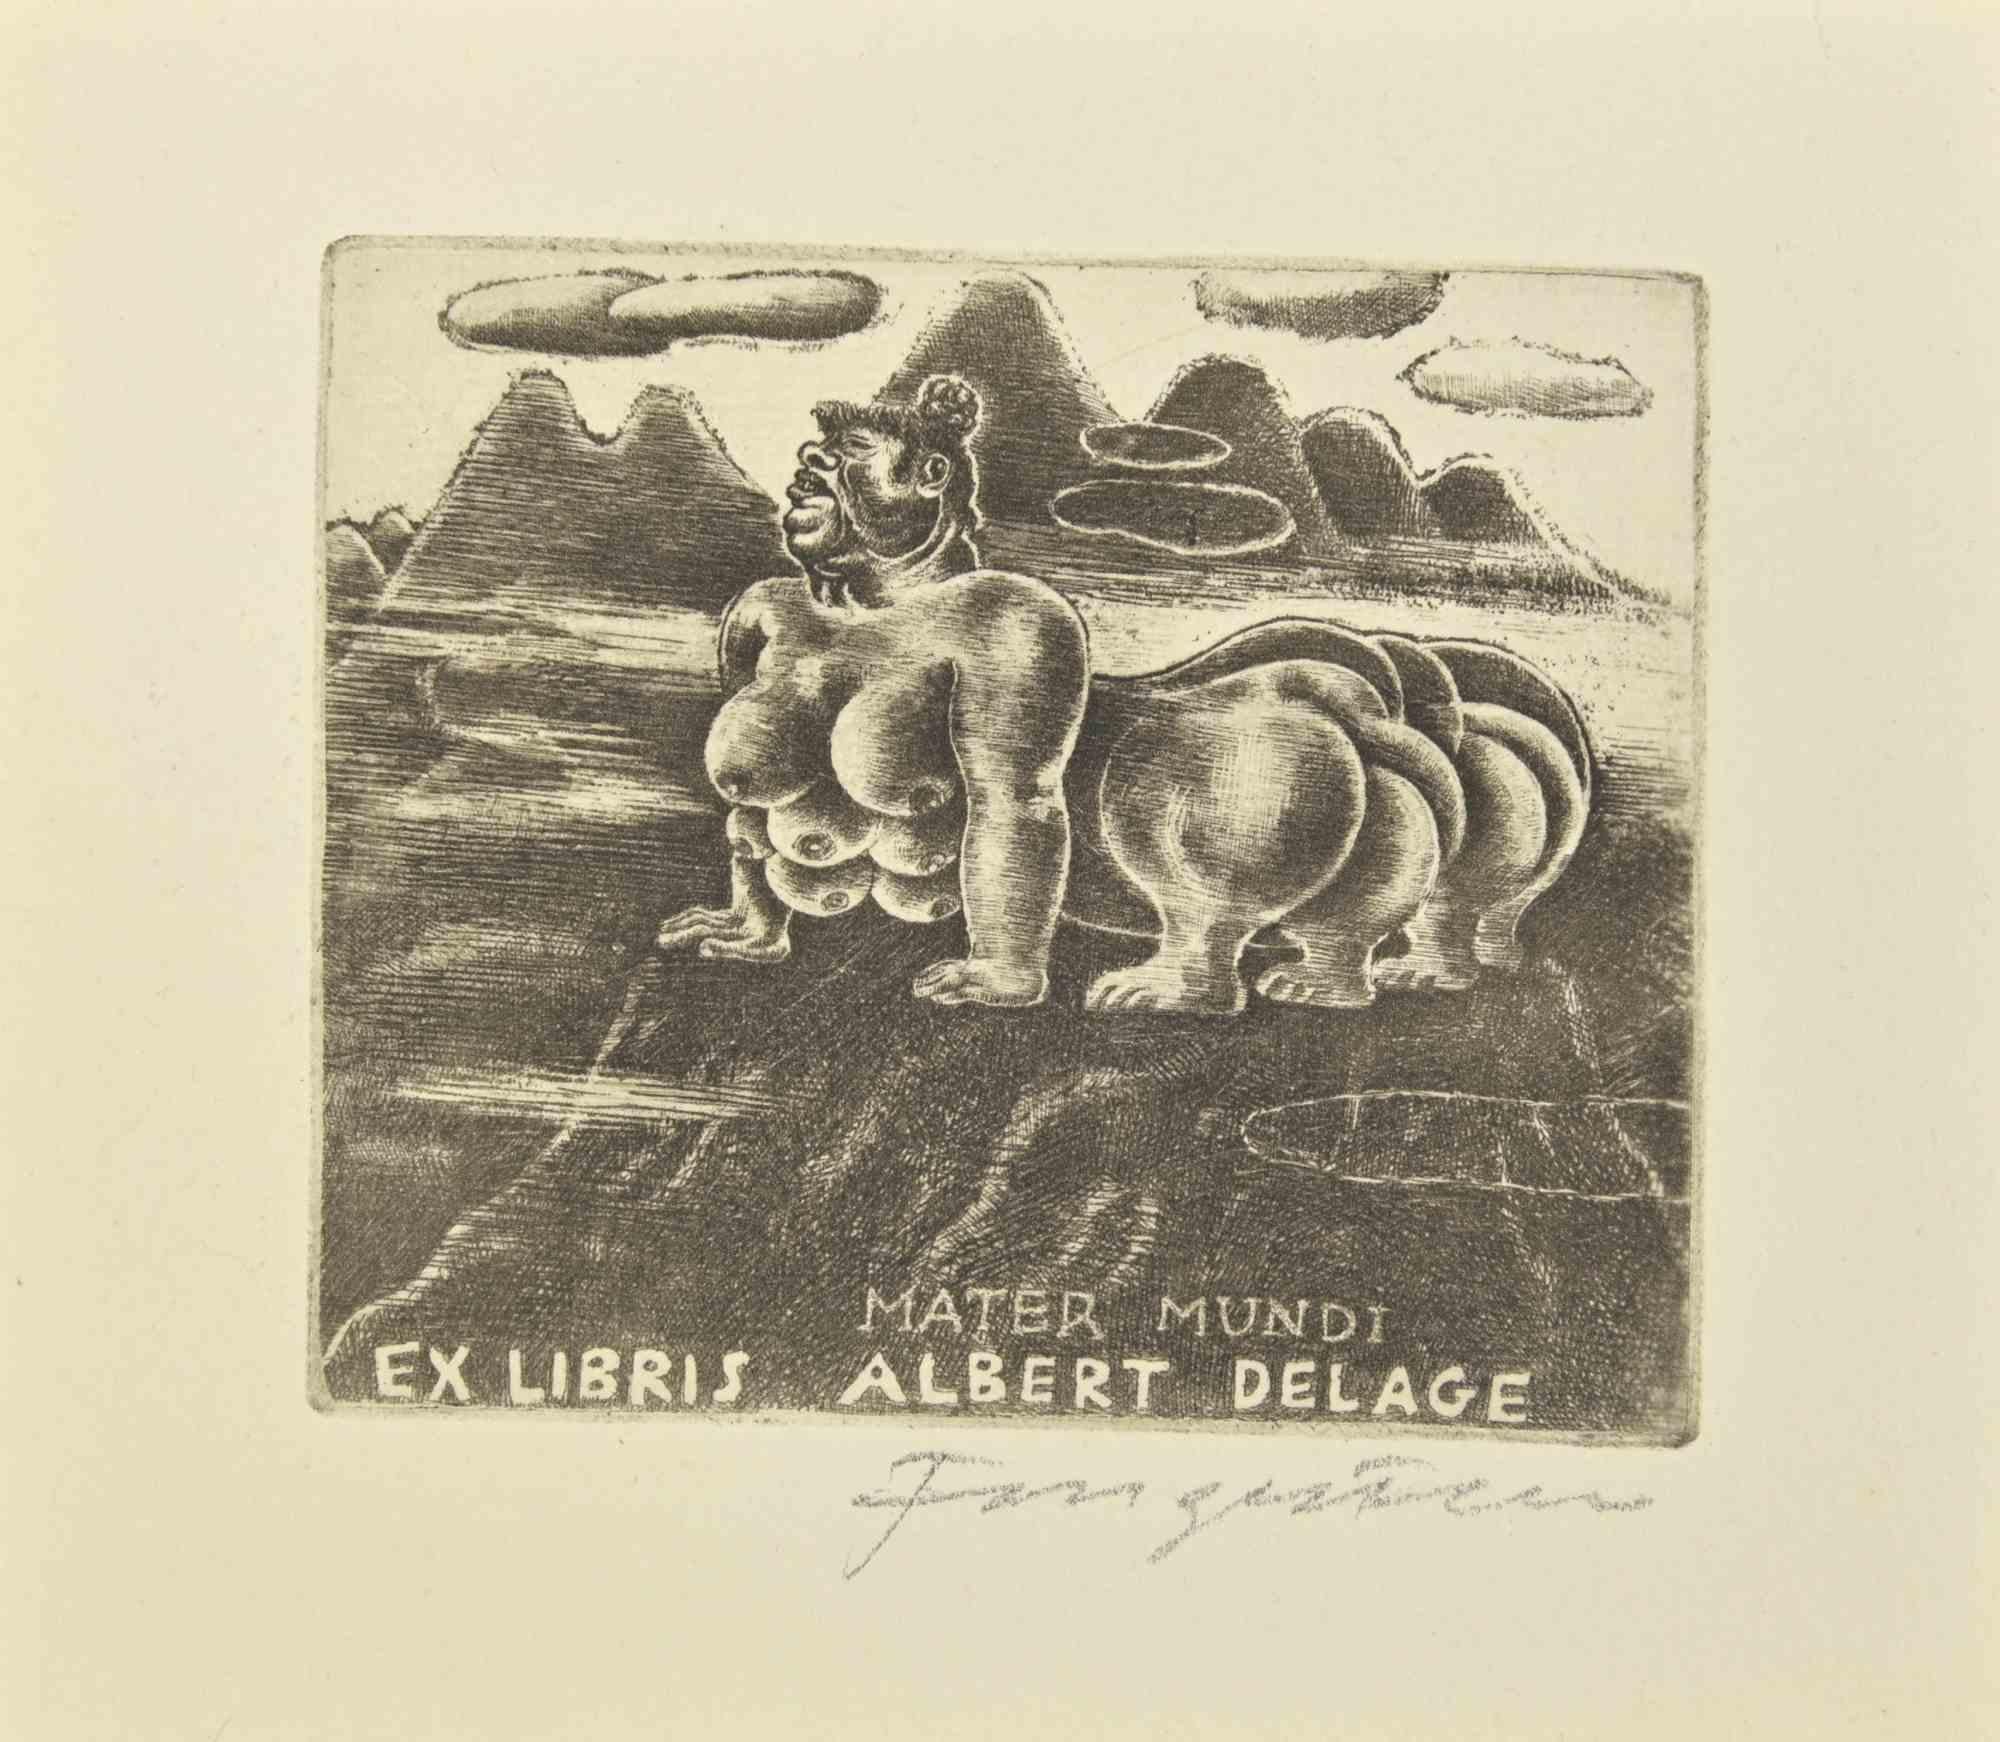 Ex Libris - Albert Delage ist eine Radierung erstellt von  Michel Fingesten.

Handsigniert am unteren Rand.

Gute Bedingungen.

Michel Fingesten (1884 - 1943) war ein tschechischer Maler und Graveur jüdischer Herkunft. Er gilt als einer der größten